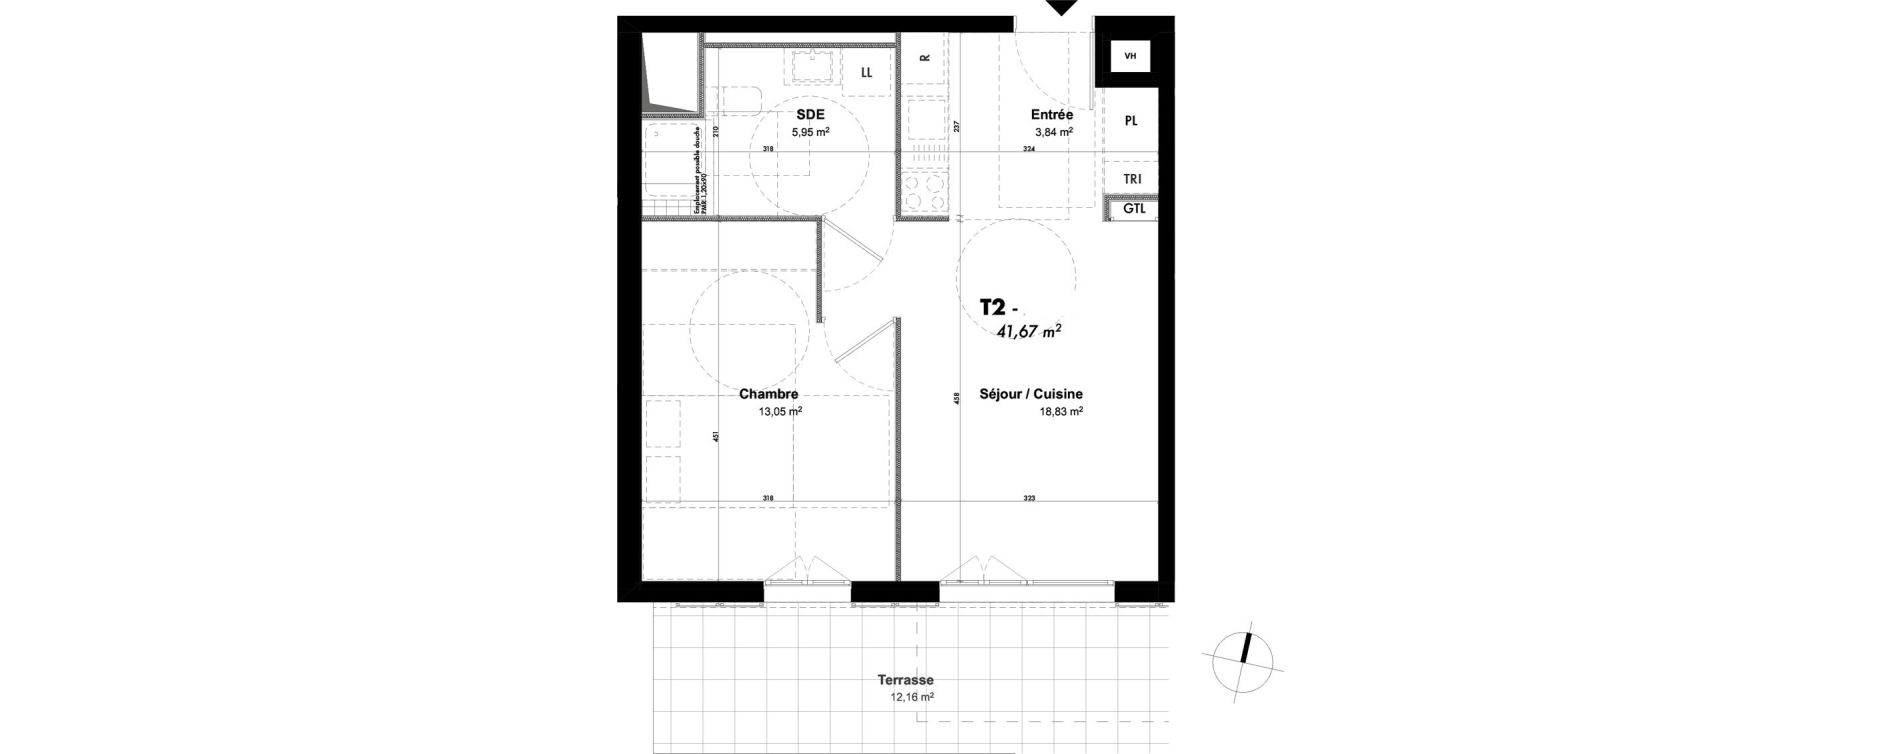 Appartement T2 de 41,67 m2 à Cergy Les doux épis